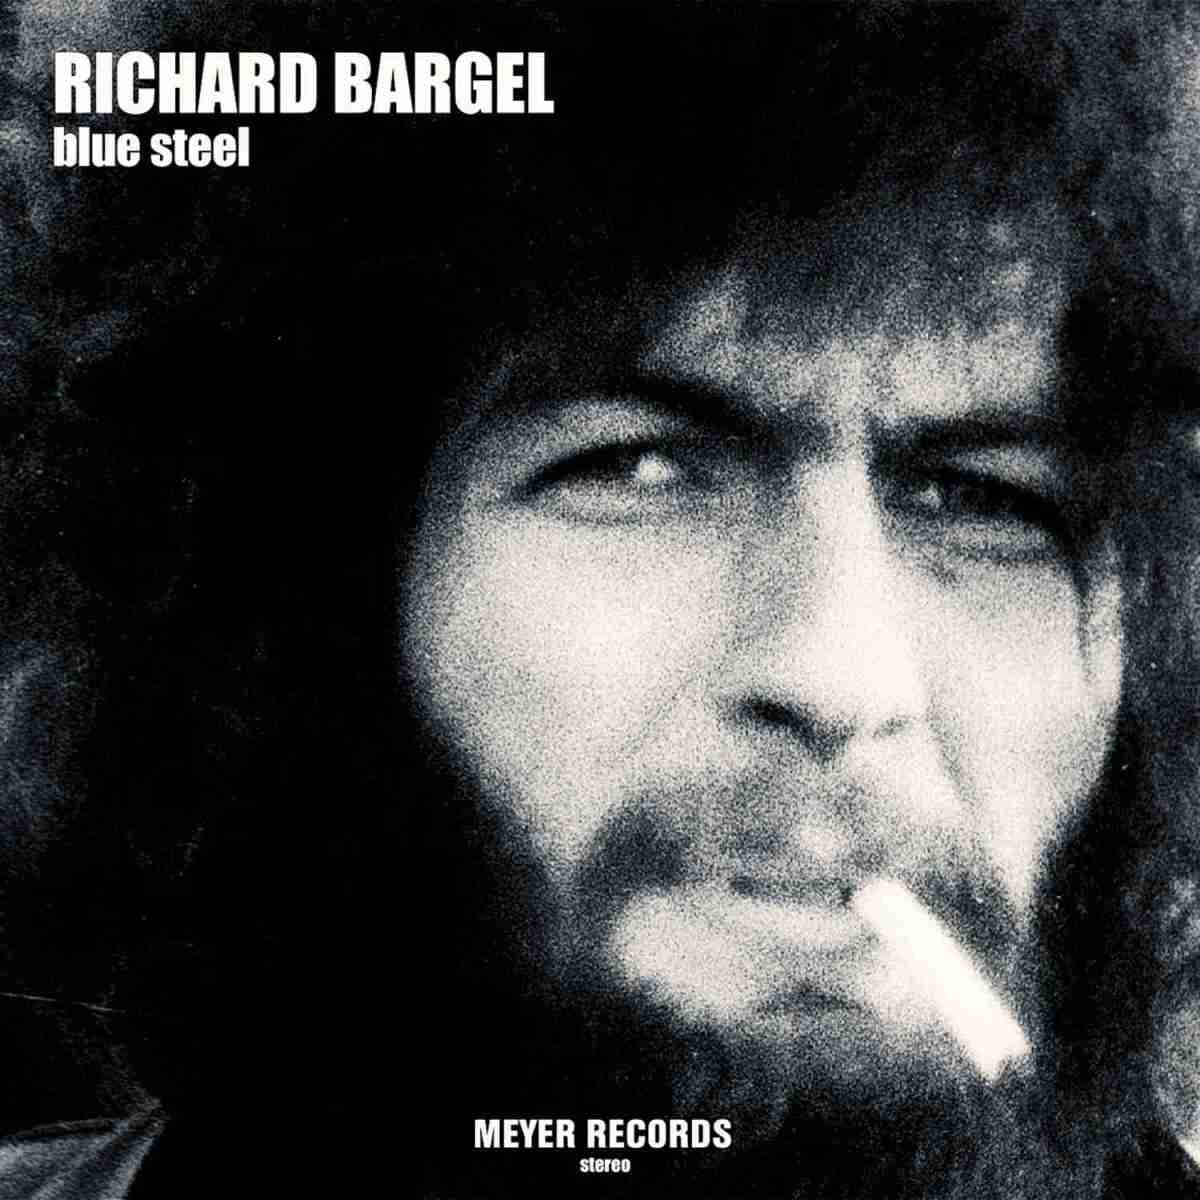 Schallplatte Richard Bargel - Blue Steel (Meyer Records) im Test, Bild 2